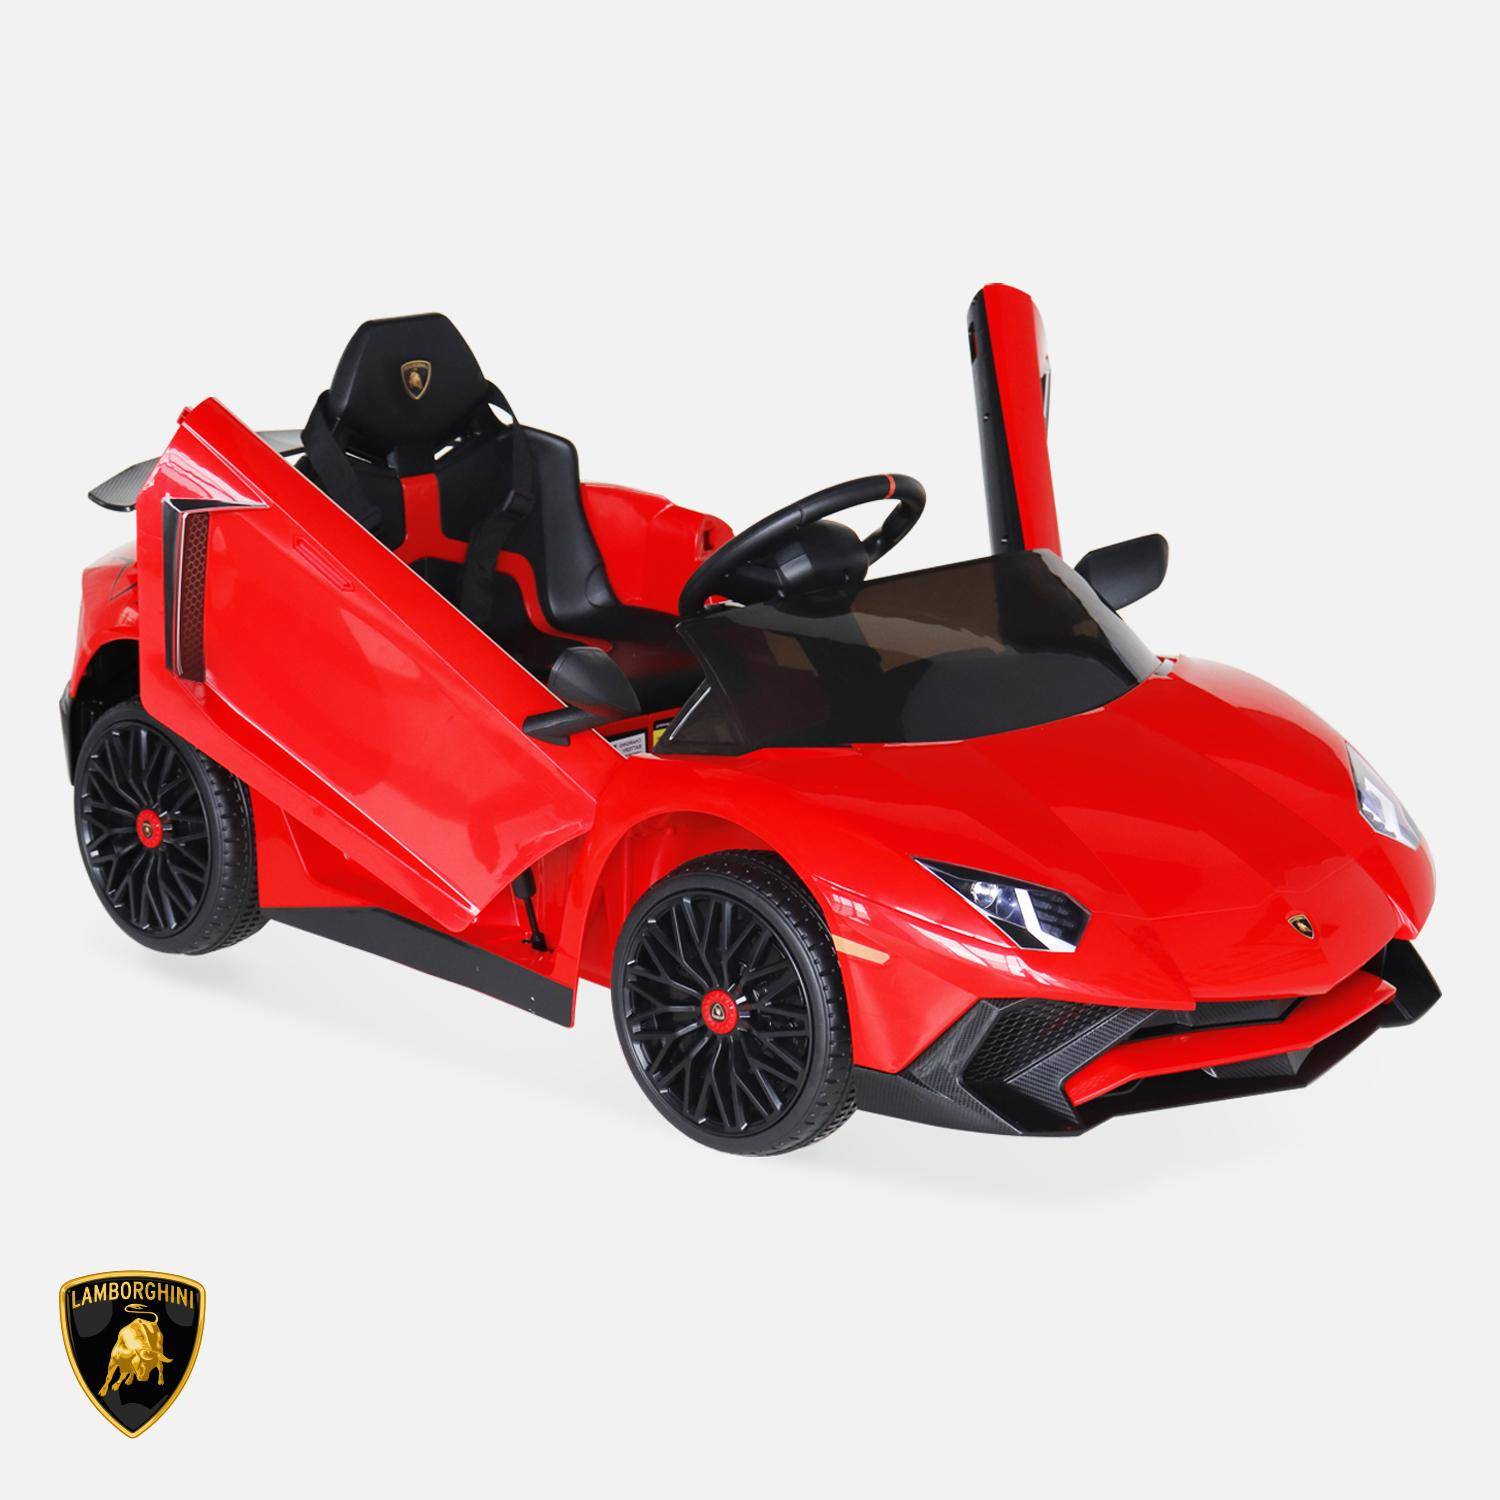 12V Lamborghini elektrische kinderauto, rood, 1 zitplaats, met autoradio, afstandsbediening, MP3, USB-poort en functionele koplampen Photo2